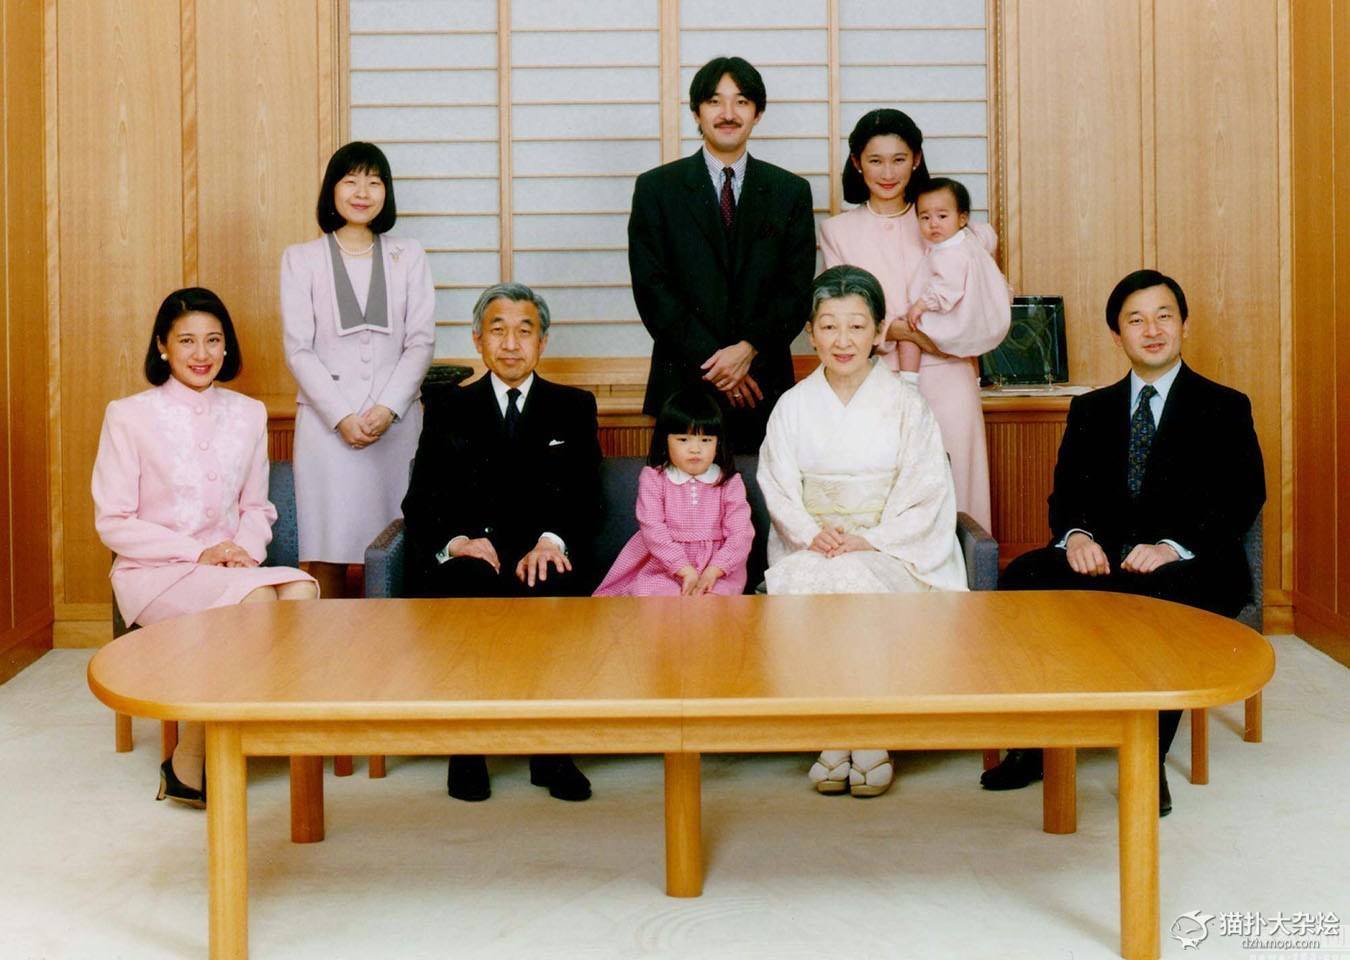 独家揭秘:现在日本年轻人是怎么看待日本天皇